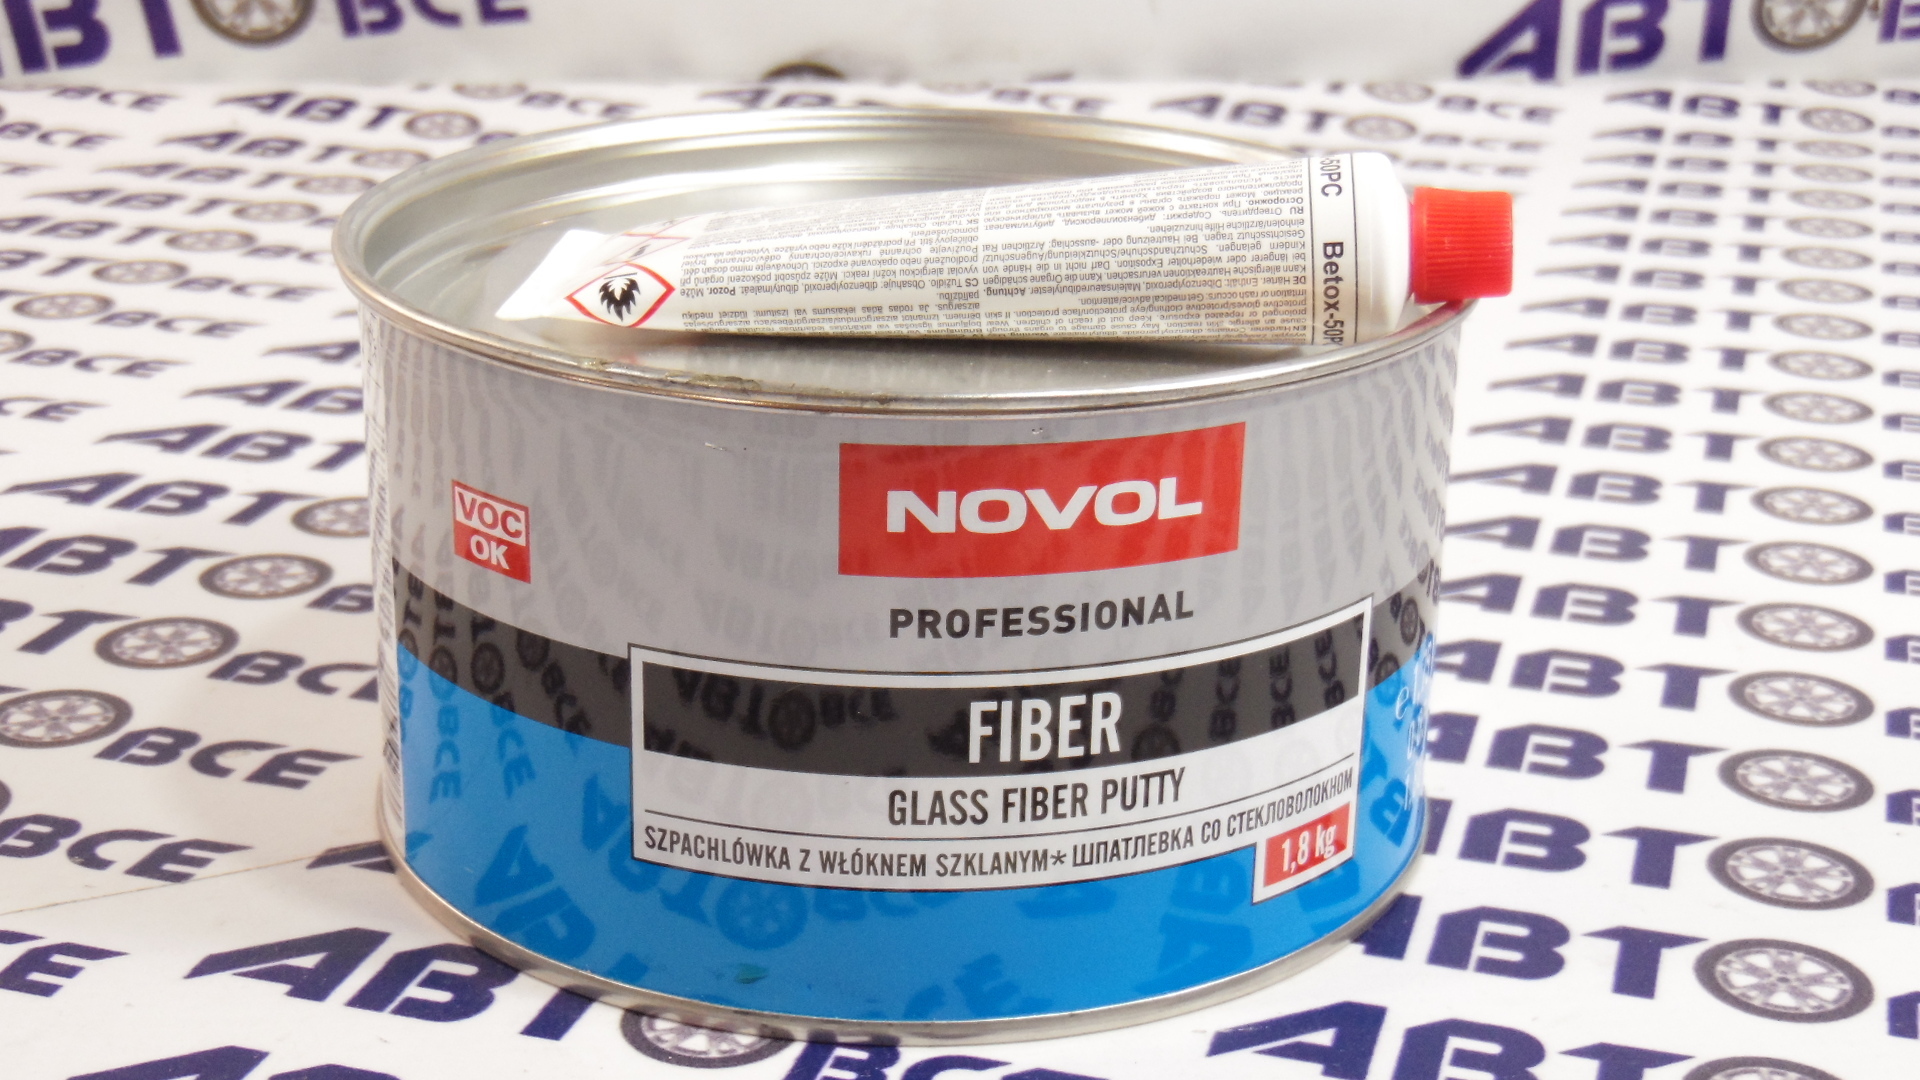 Шпатлевка со стеклом 1.8 кг (Fiber) NOVOL